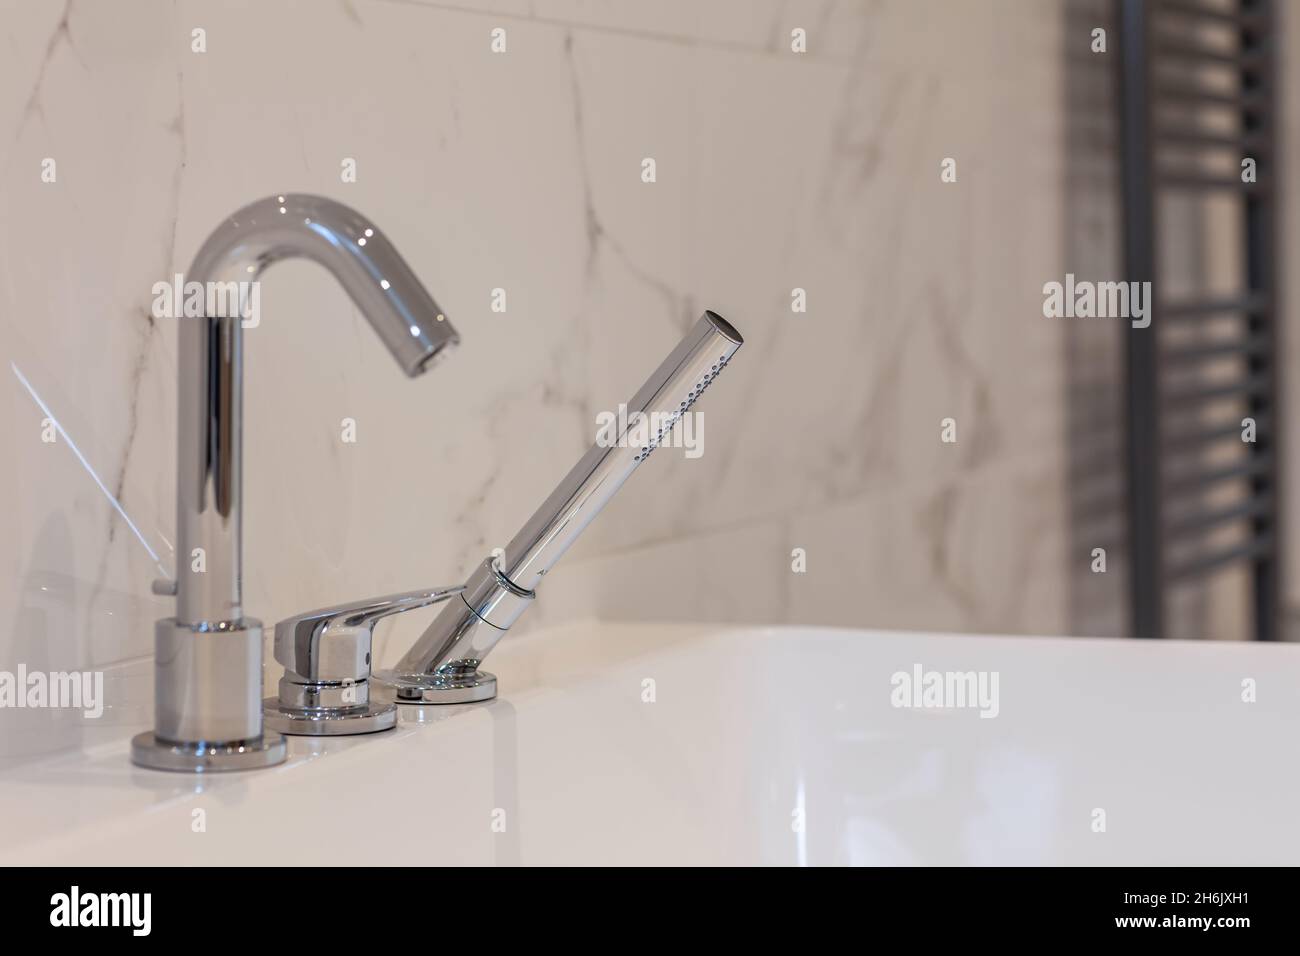 Immagine dettagliata del rubinetto del miscelatore per vasca e doccia cromata posizionata sulla testa di una vasca da bagno bianca Foto Stock